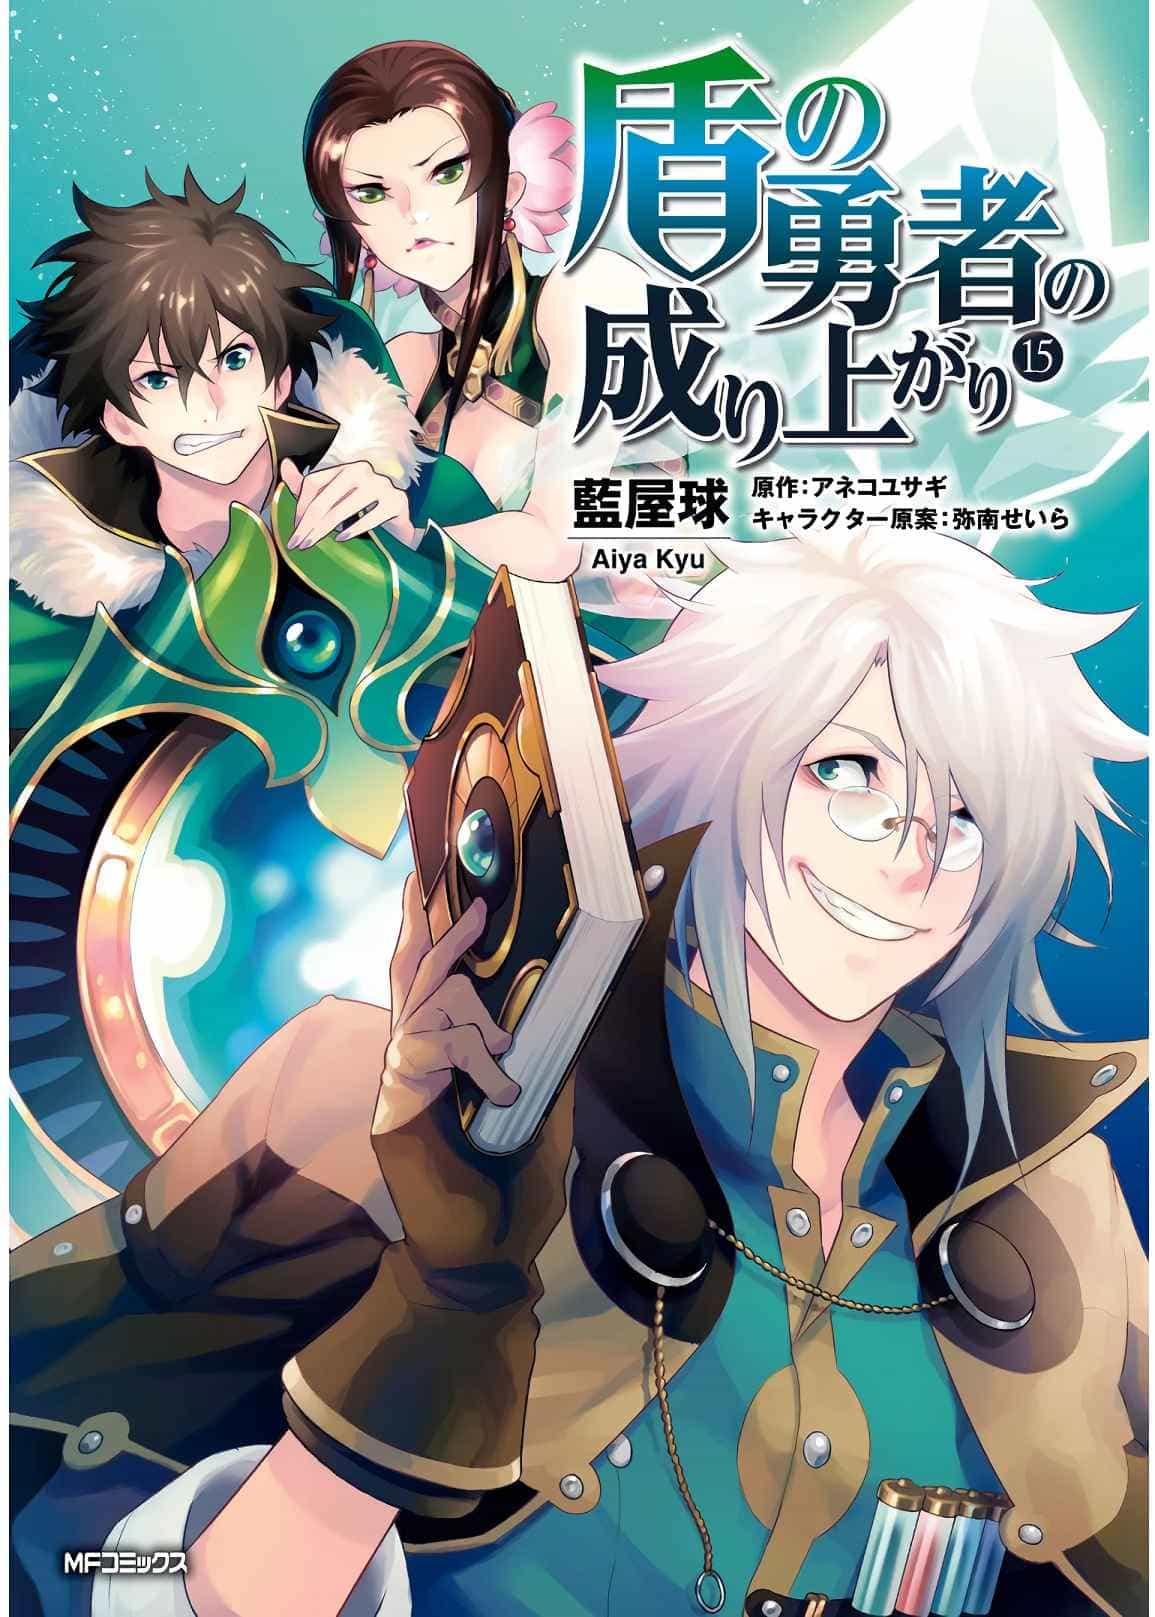 tate no yuusha no nariagari light novel english pdf